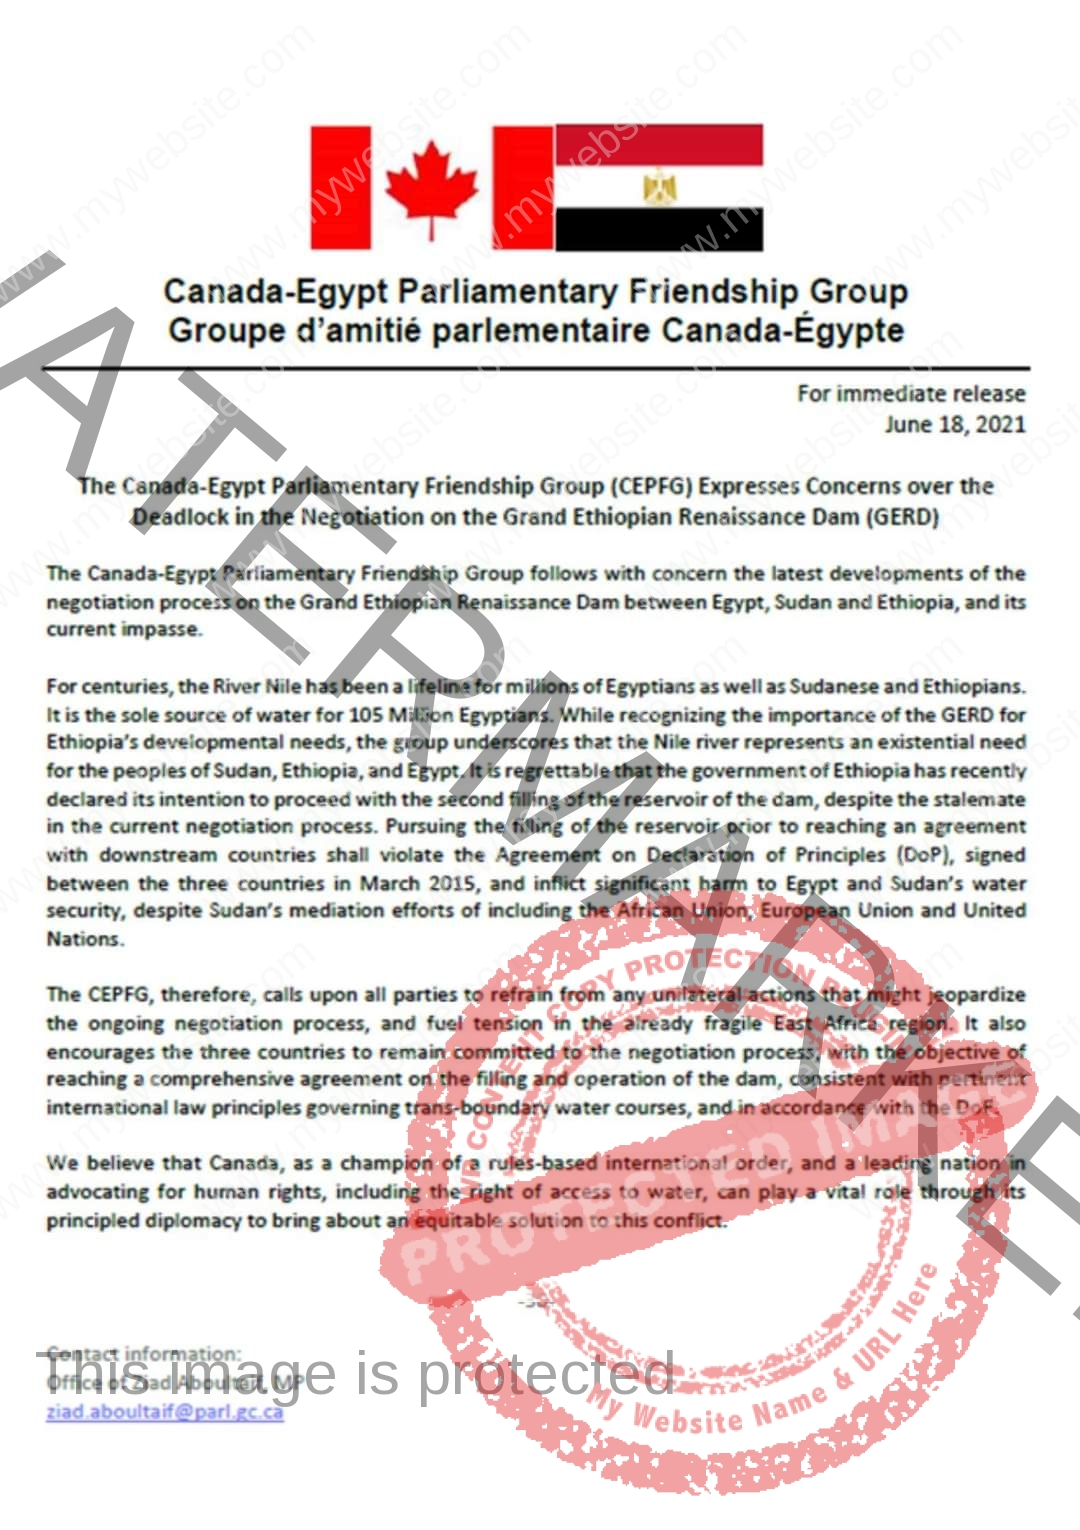 الصداقة الكندية المصرية تؤكد أن الملء الثاني لسد النهضة دون اتفاق مع دولتي المصب مخالف لـ القانون الدولي